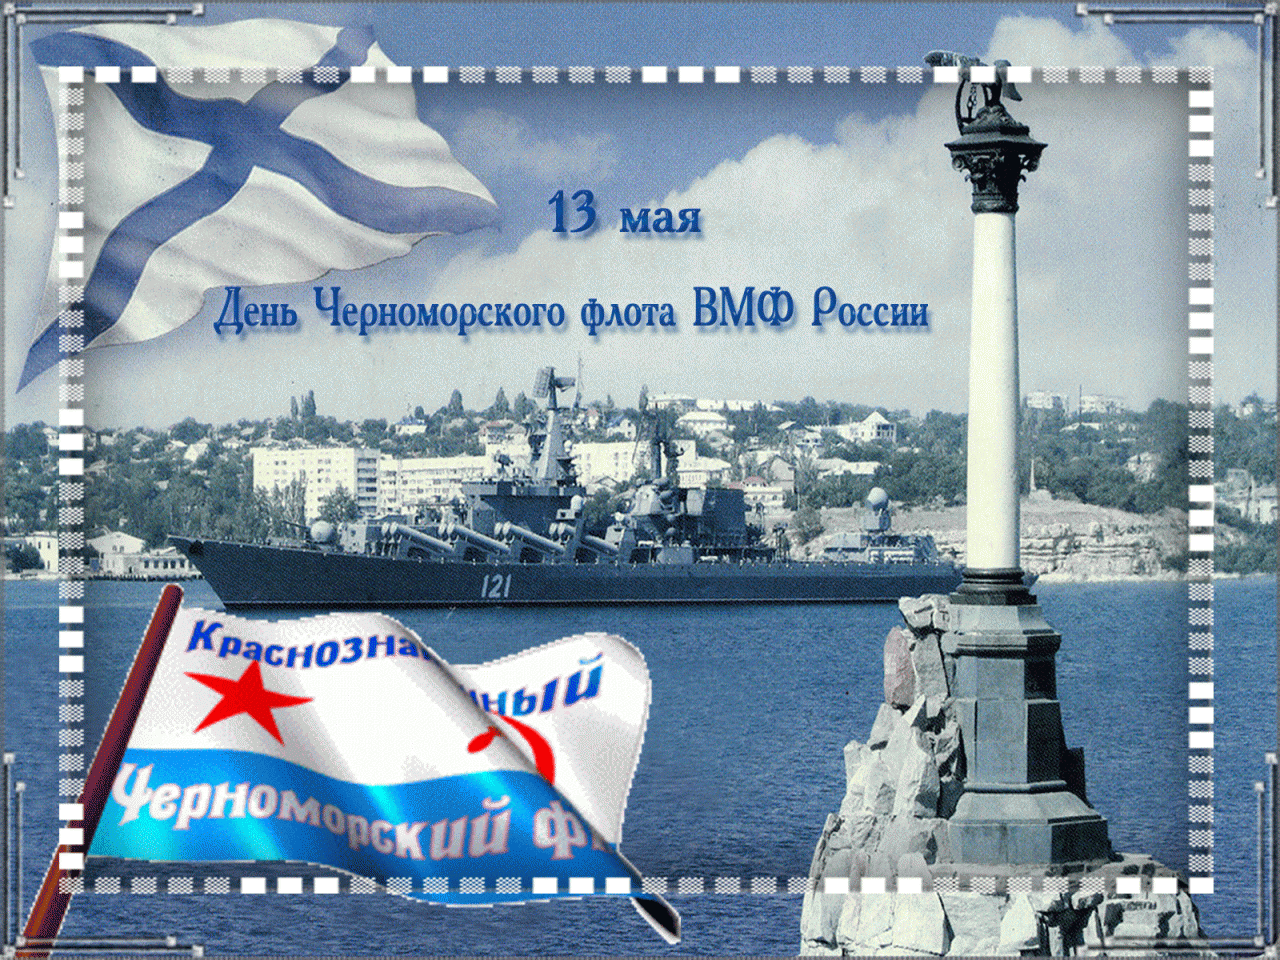 Красивая картинка день черноморского флота россии